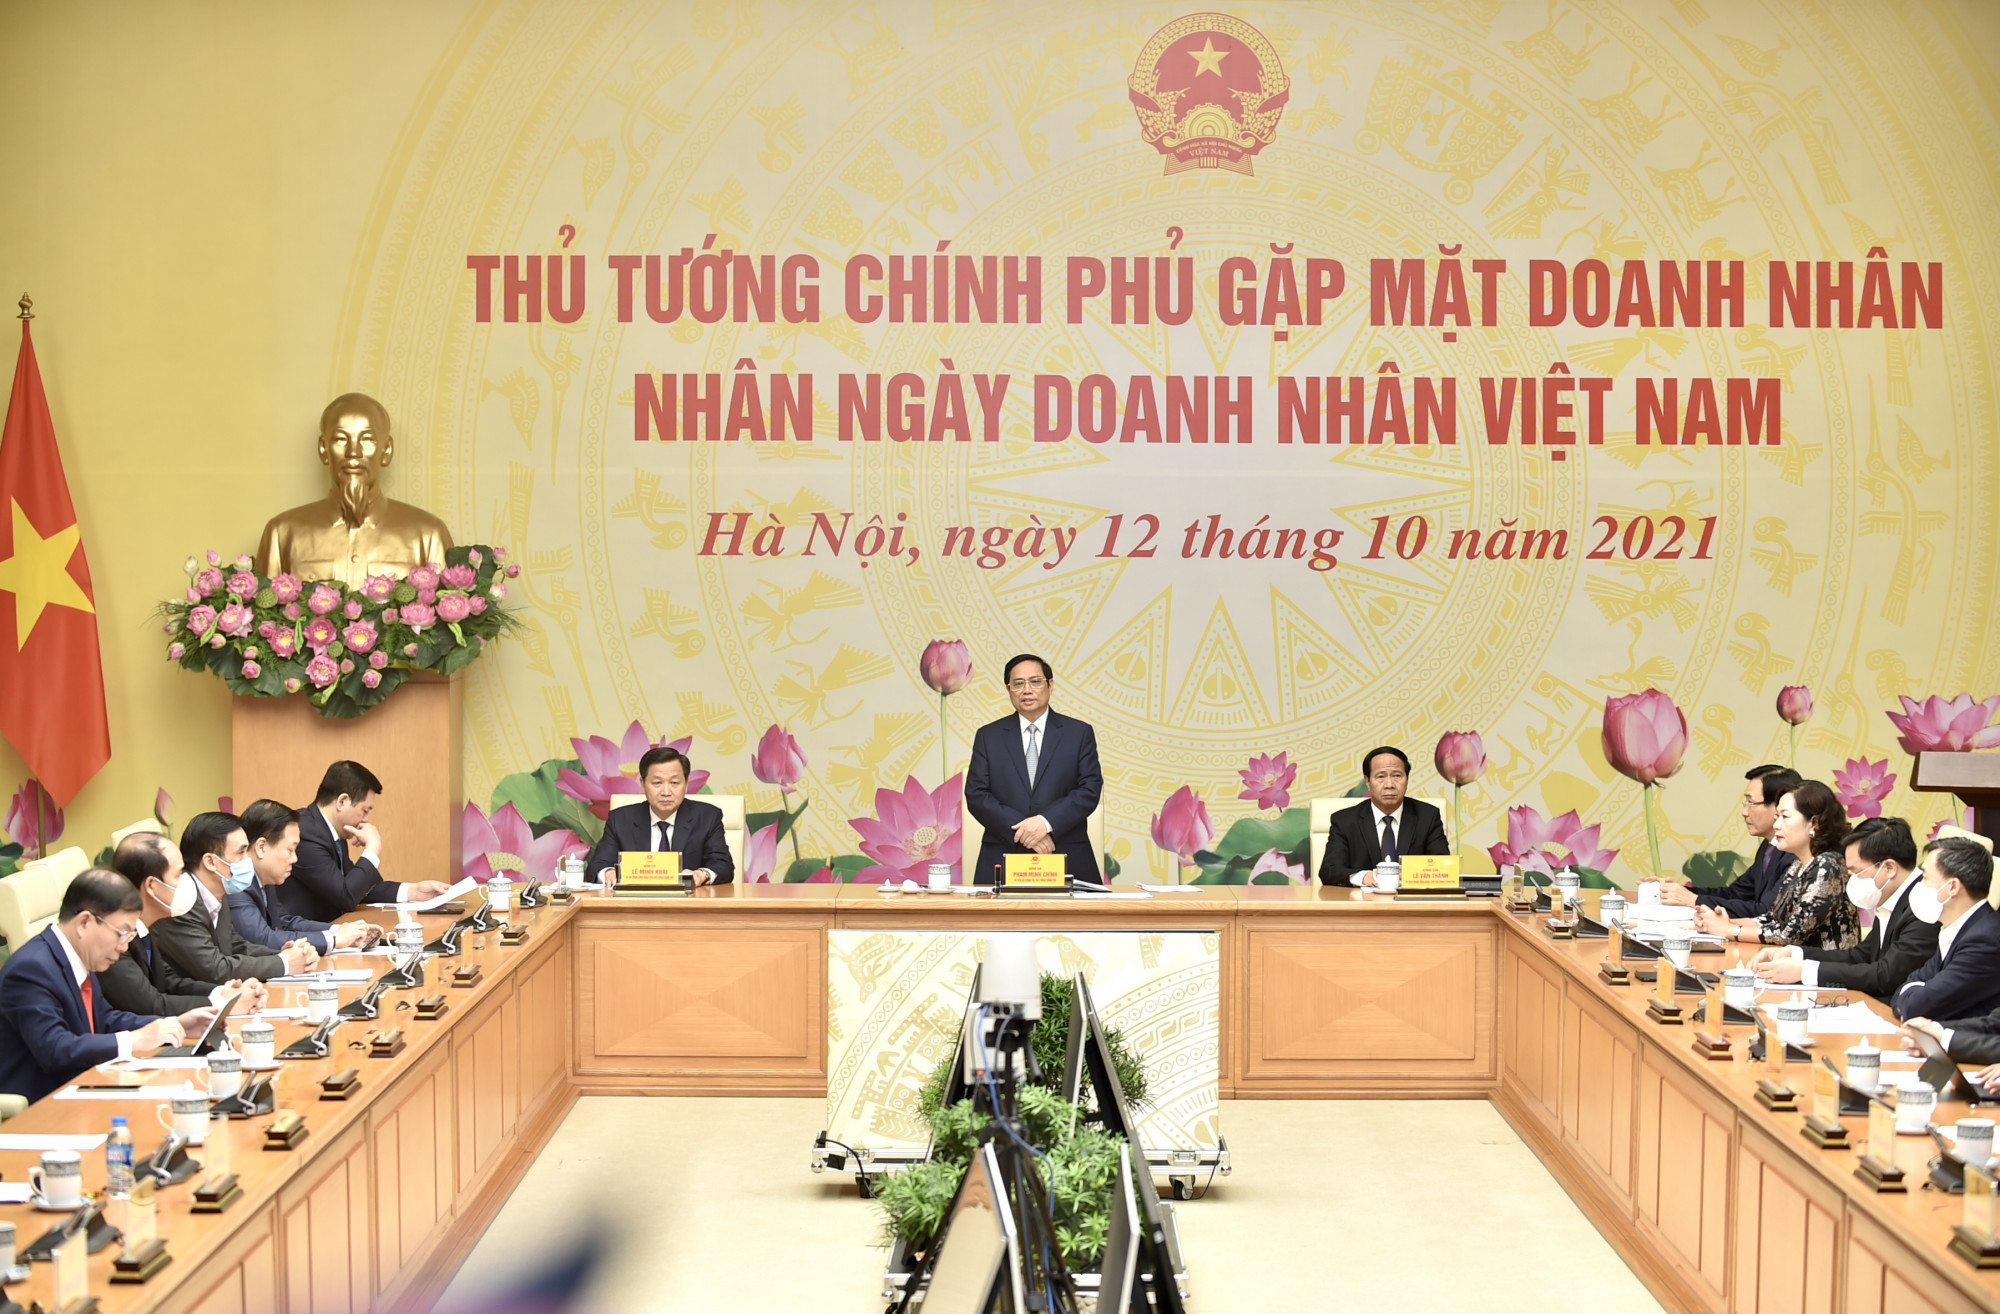 Ngày doanh nhân Việt Nam năm nay được kỷ niệm trong bối cảnh khác với mọi năm, chúng ta phòng chống đại dịch trên phạm vi cả nước. Ảnh VGP/Nhật Bắc